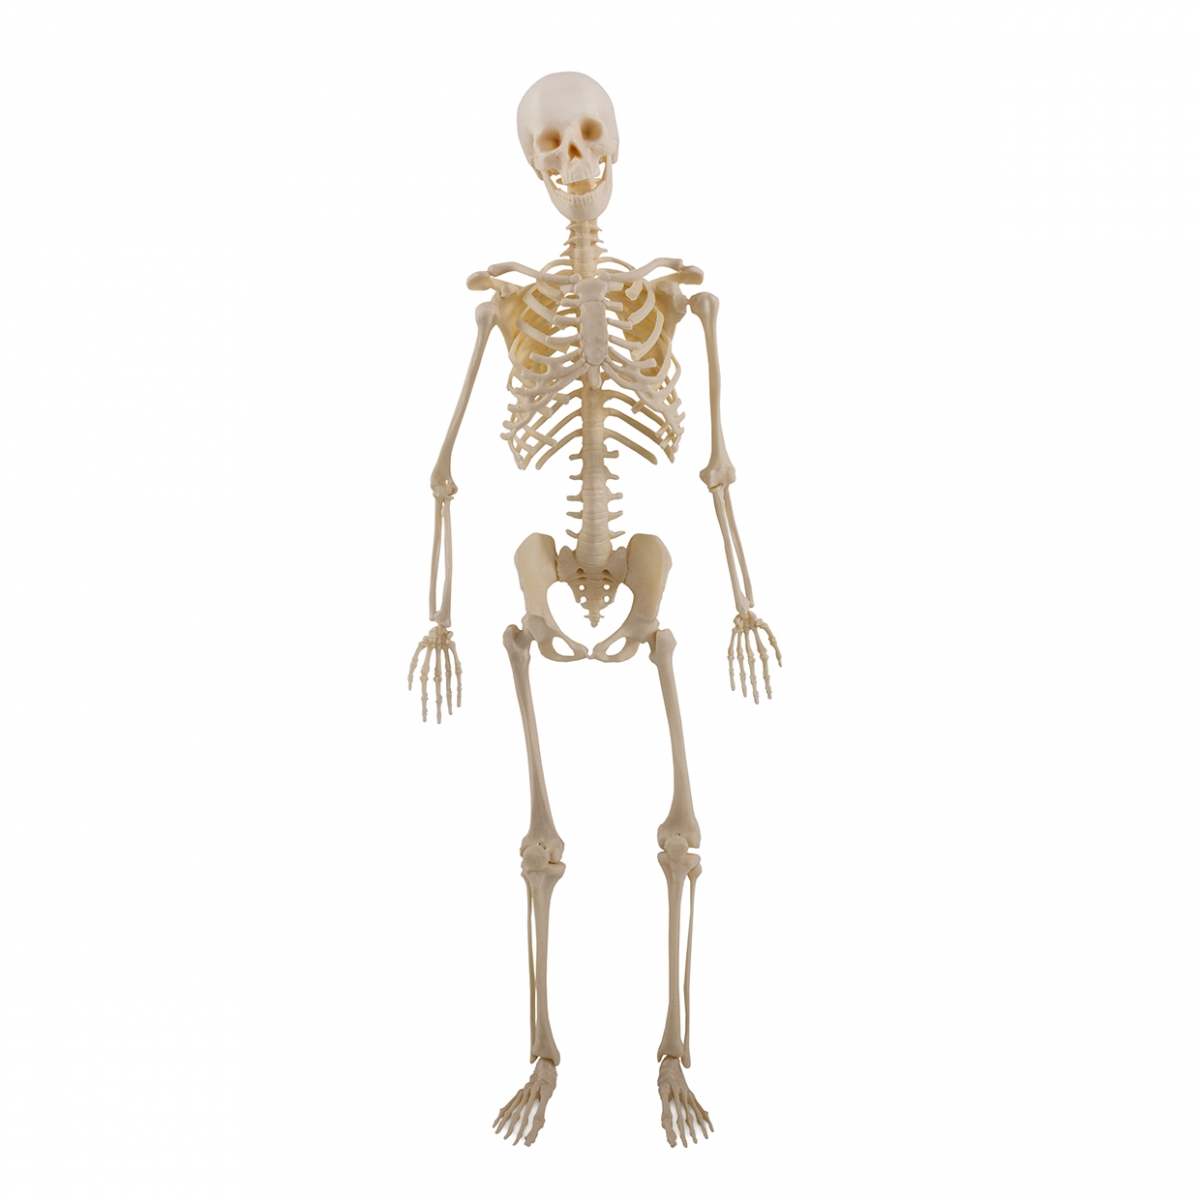 Imagen en la que se ve un esqueleto humano